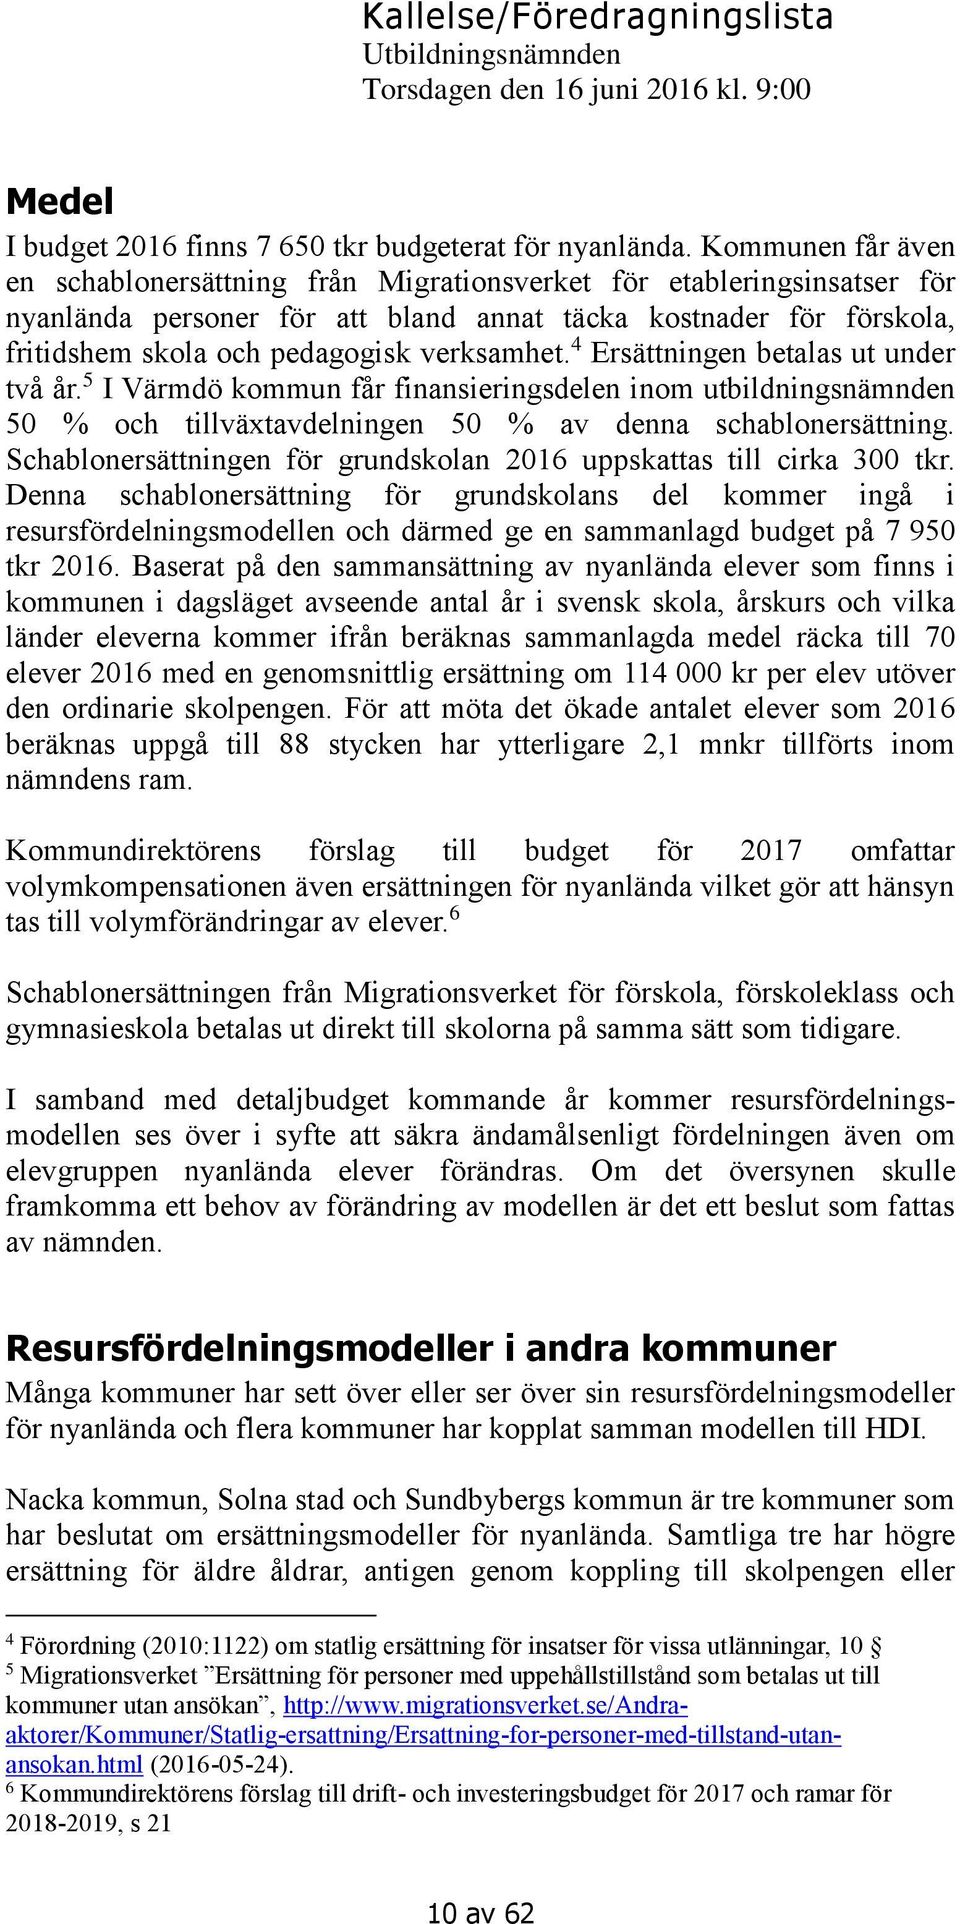 verksamhet. 4 Ersättningen betalas ut under två år. 5 I Värmdö kommun får finansieringsdelen inom utbildningsnämnden 50 % och tillväxtavdelningen 50 % av denna schablonersättning.